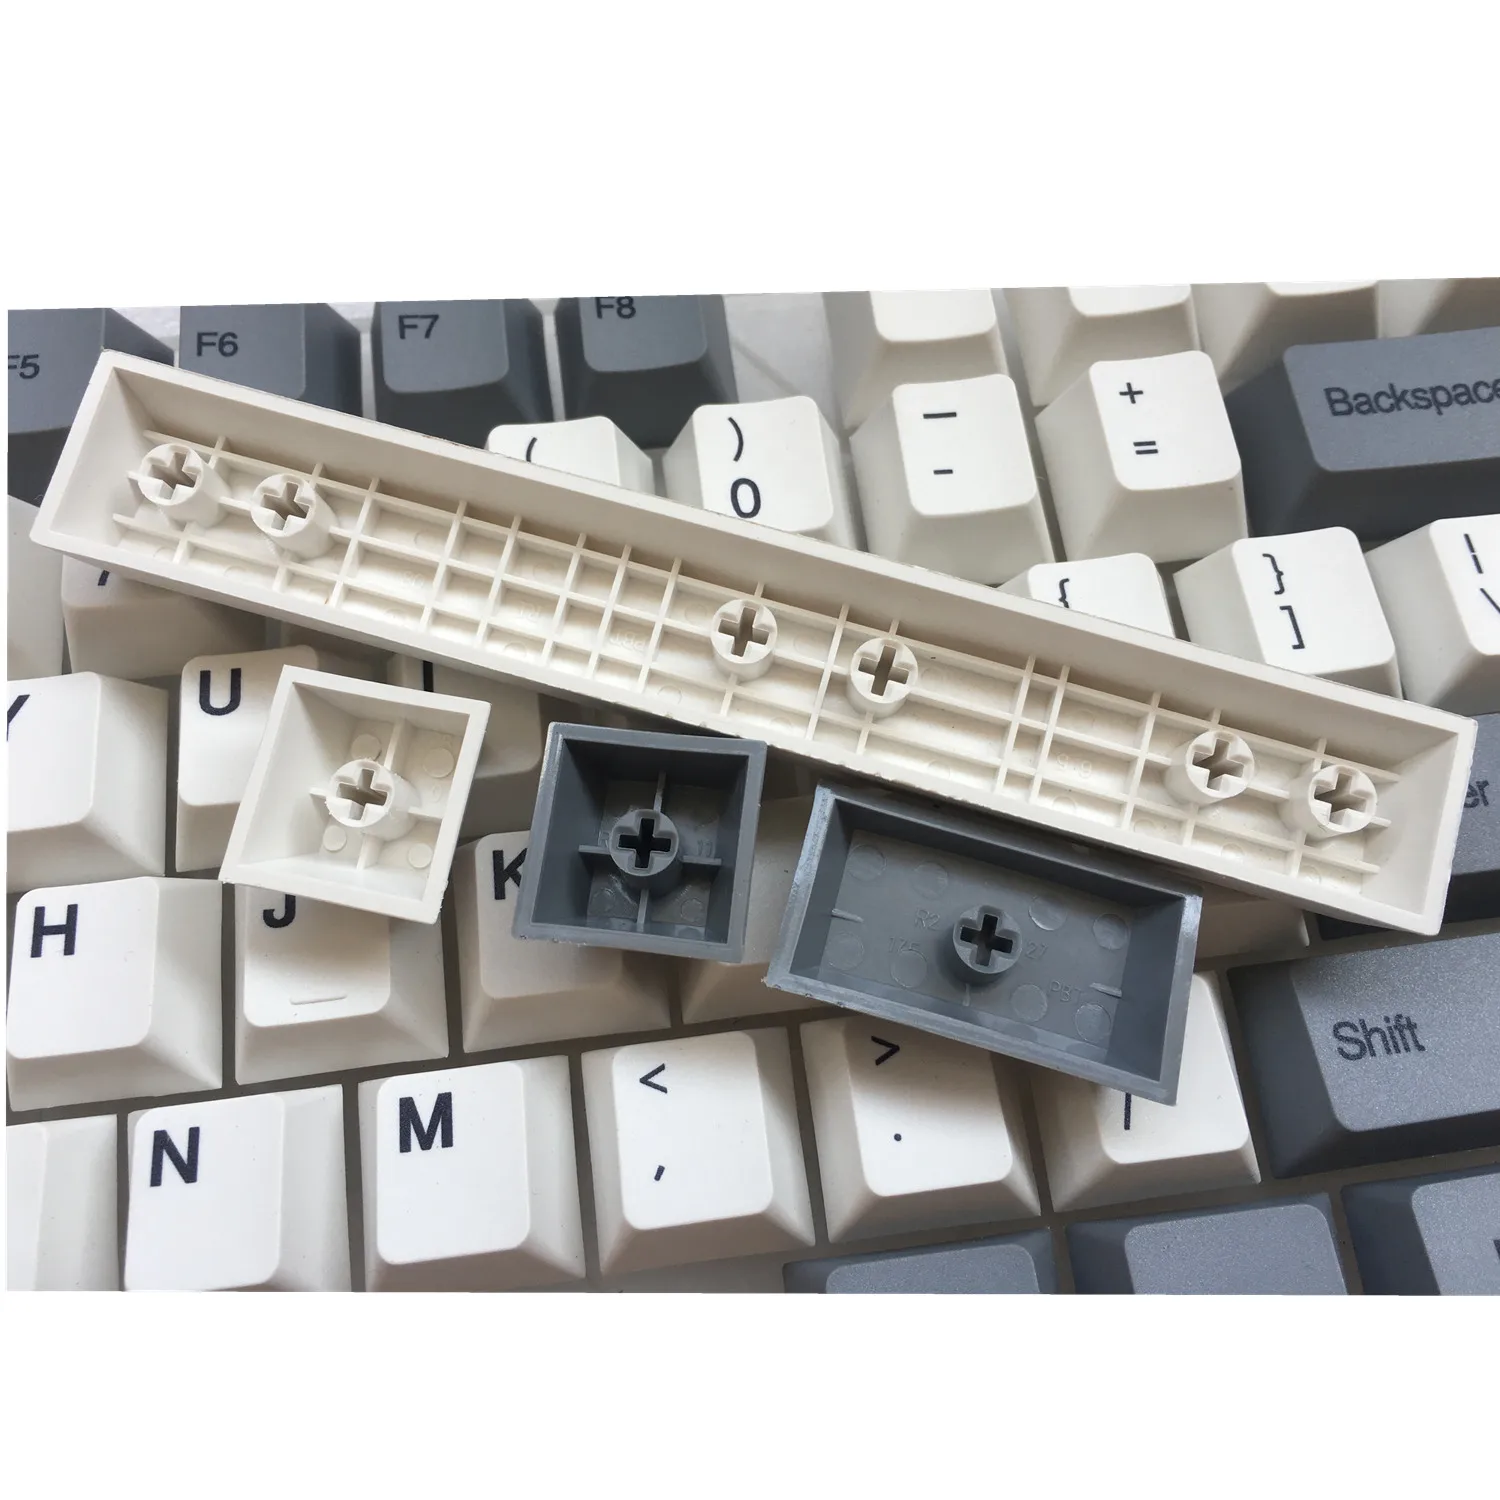 Клавишные колпачки pbt 87 Keyset красящая лента для возгонки Cherry MX Чехлы для клавиш топ печать/вишневый профиль/ANSI макет для TKL 87 MX Переключатель механический